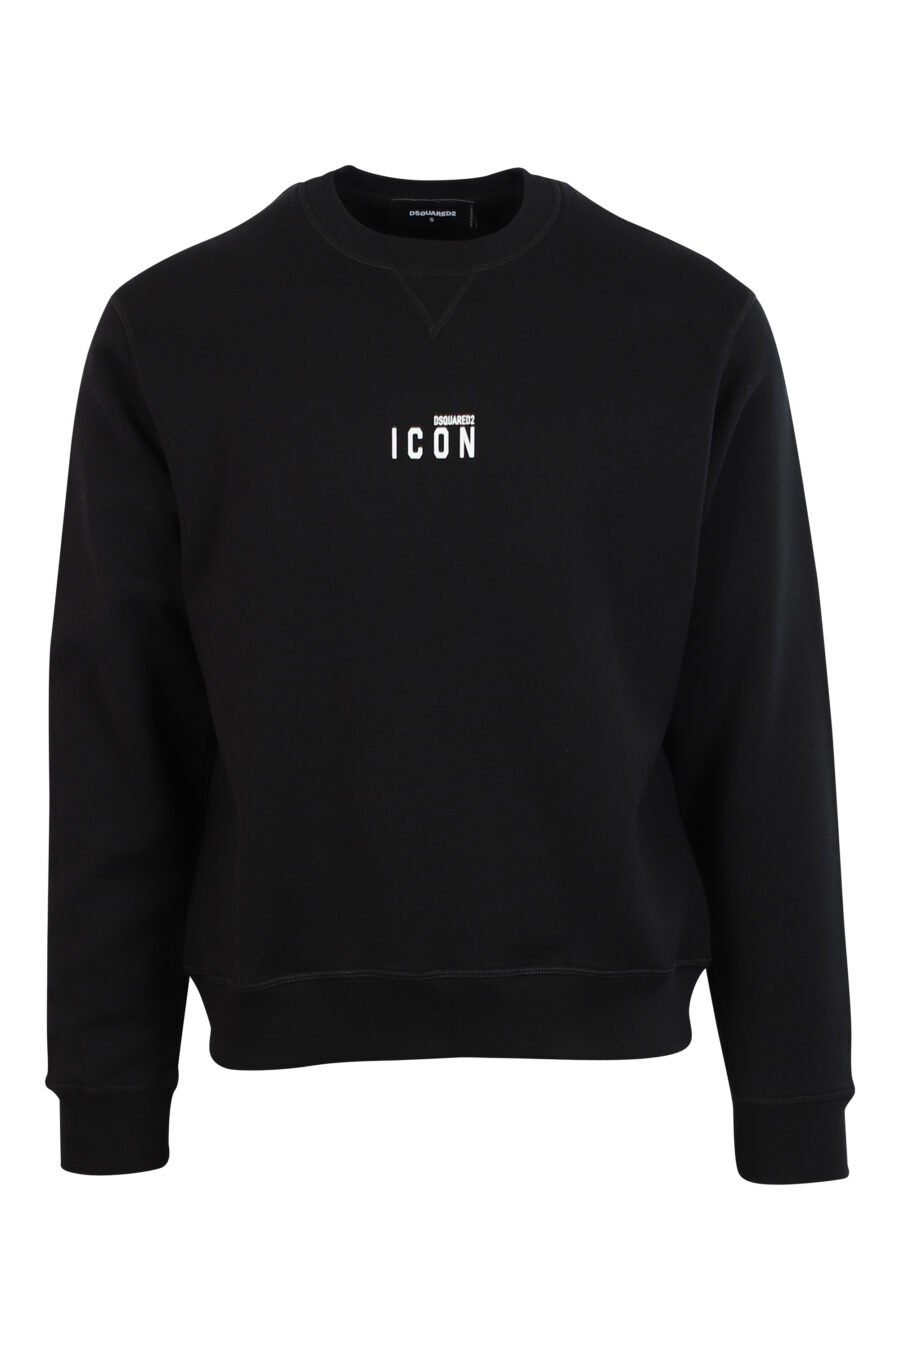 Schwarzes Sweatshirt mit weißem, zentriertem Minilogo - 8052134120460